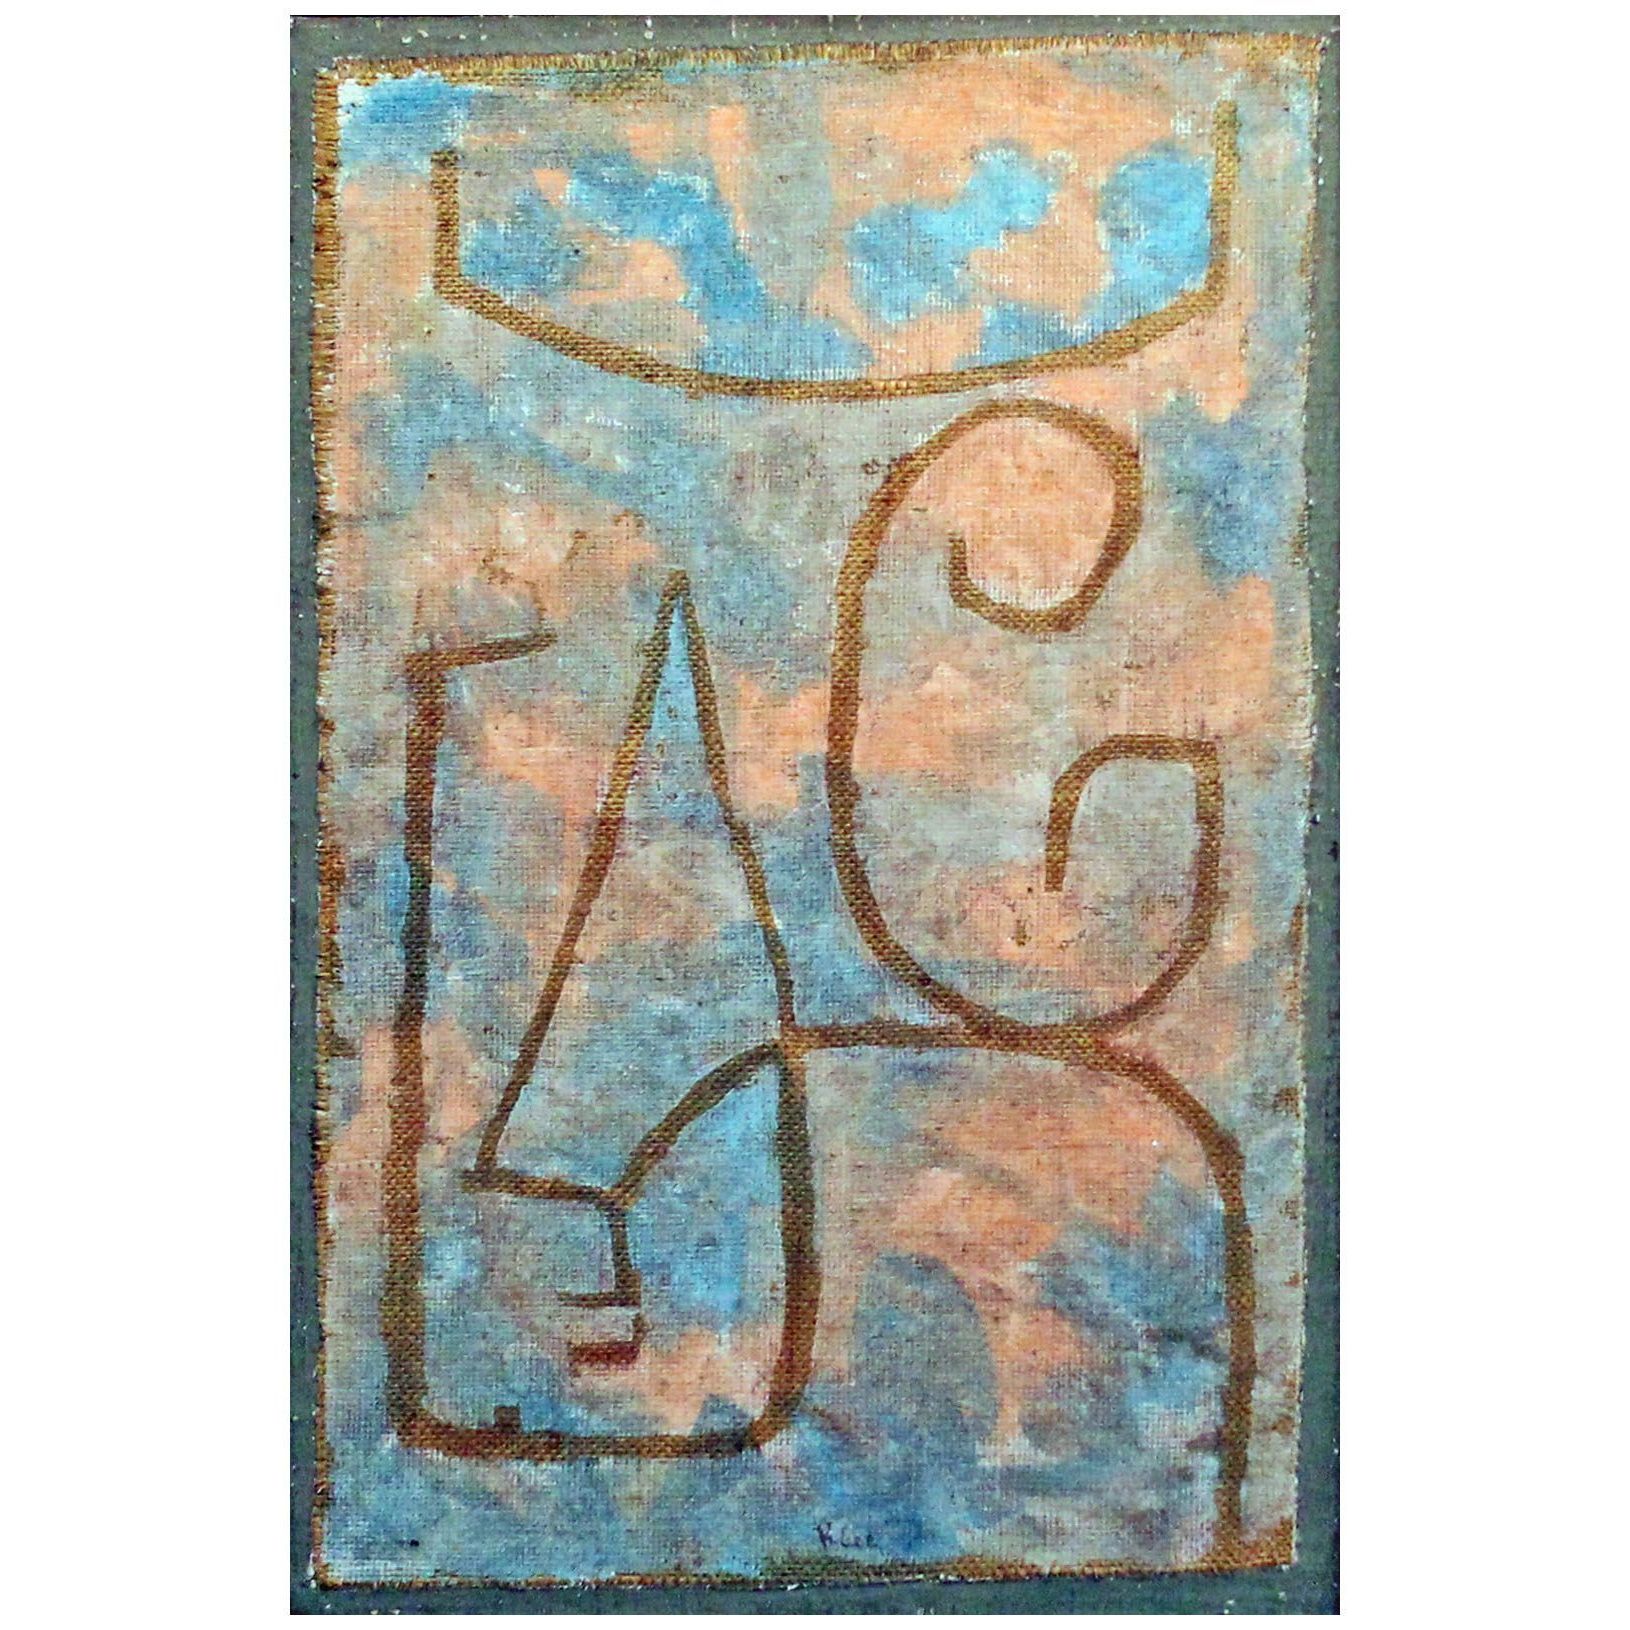 Paul Klee. Milderung. 1938. Privatsammlung